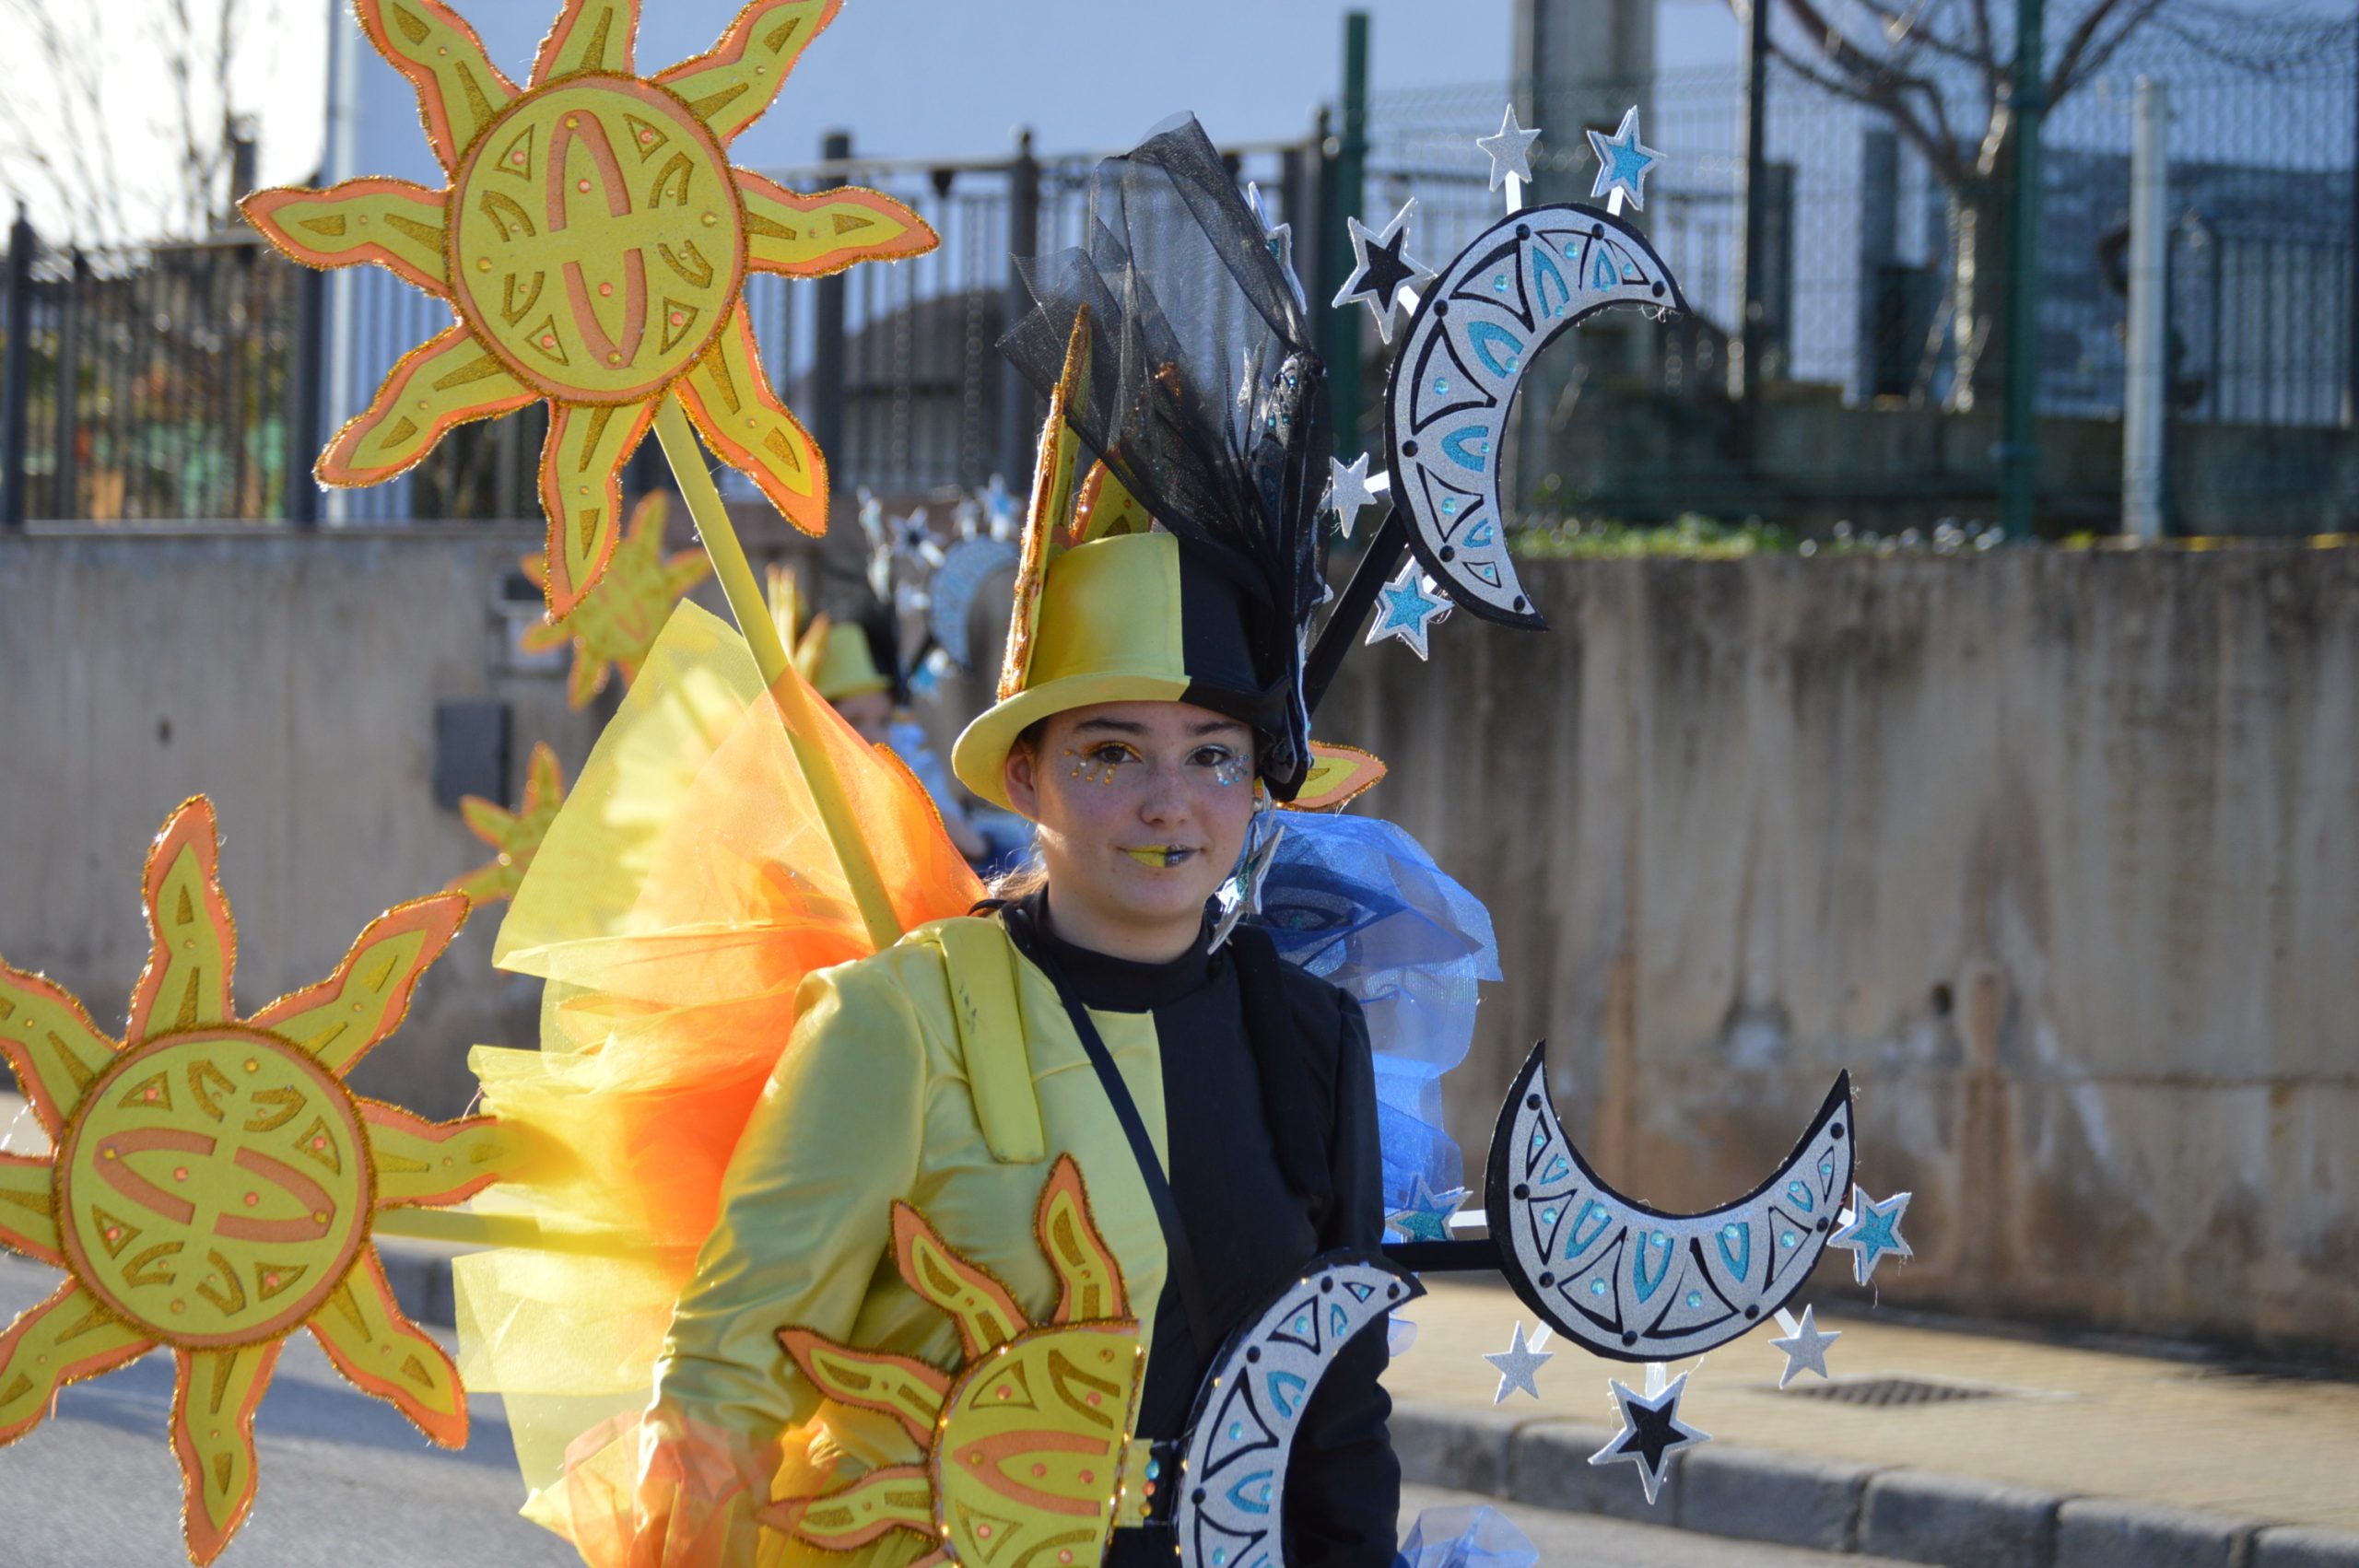 La alegría del Carnaval recorre Cubillos del Sil bajo un sol casi-primaveral 64